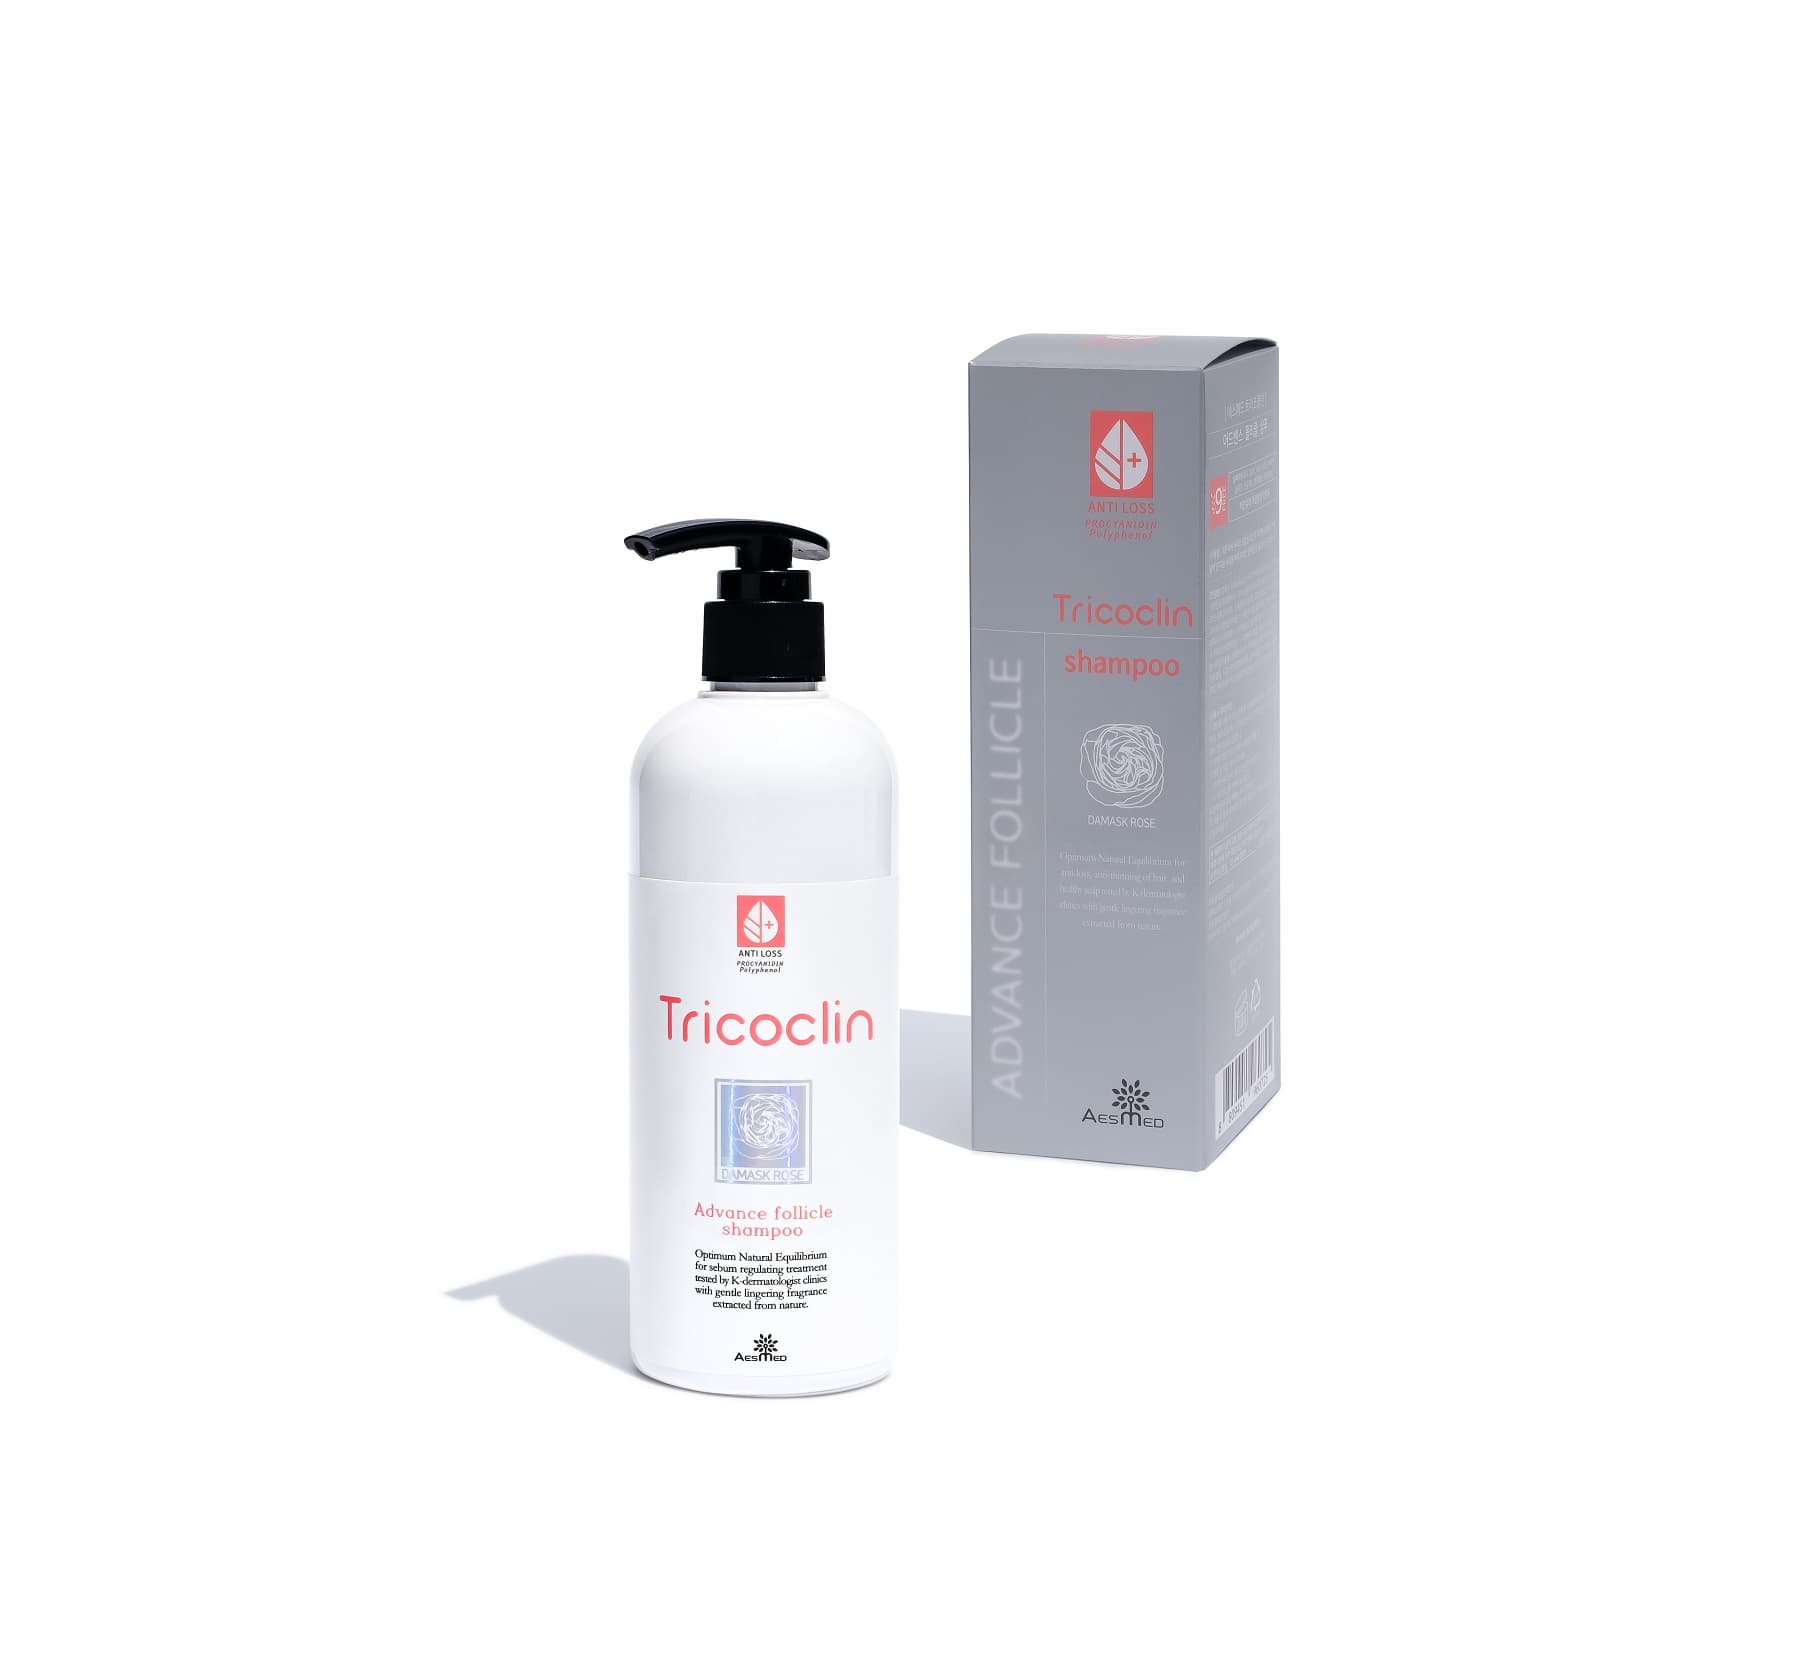 TricoClin Advance Follicle shampoo